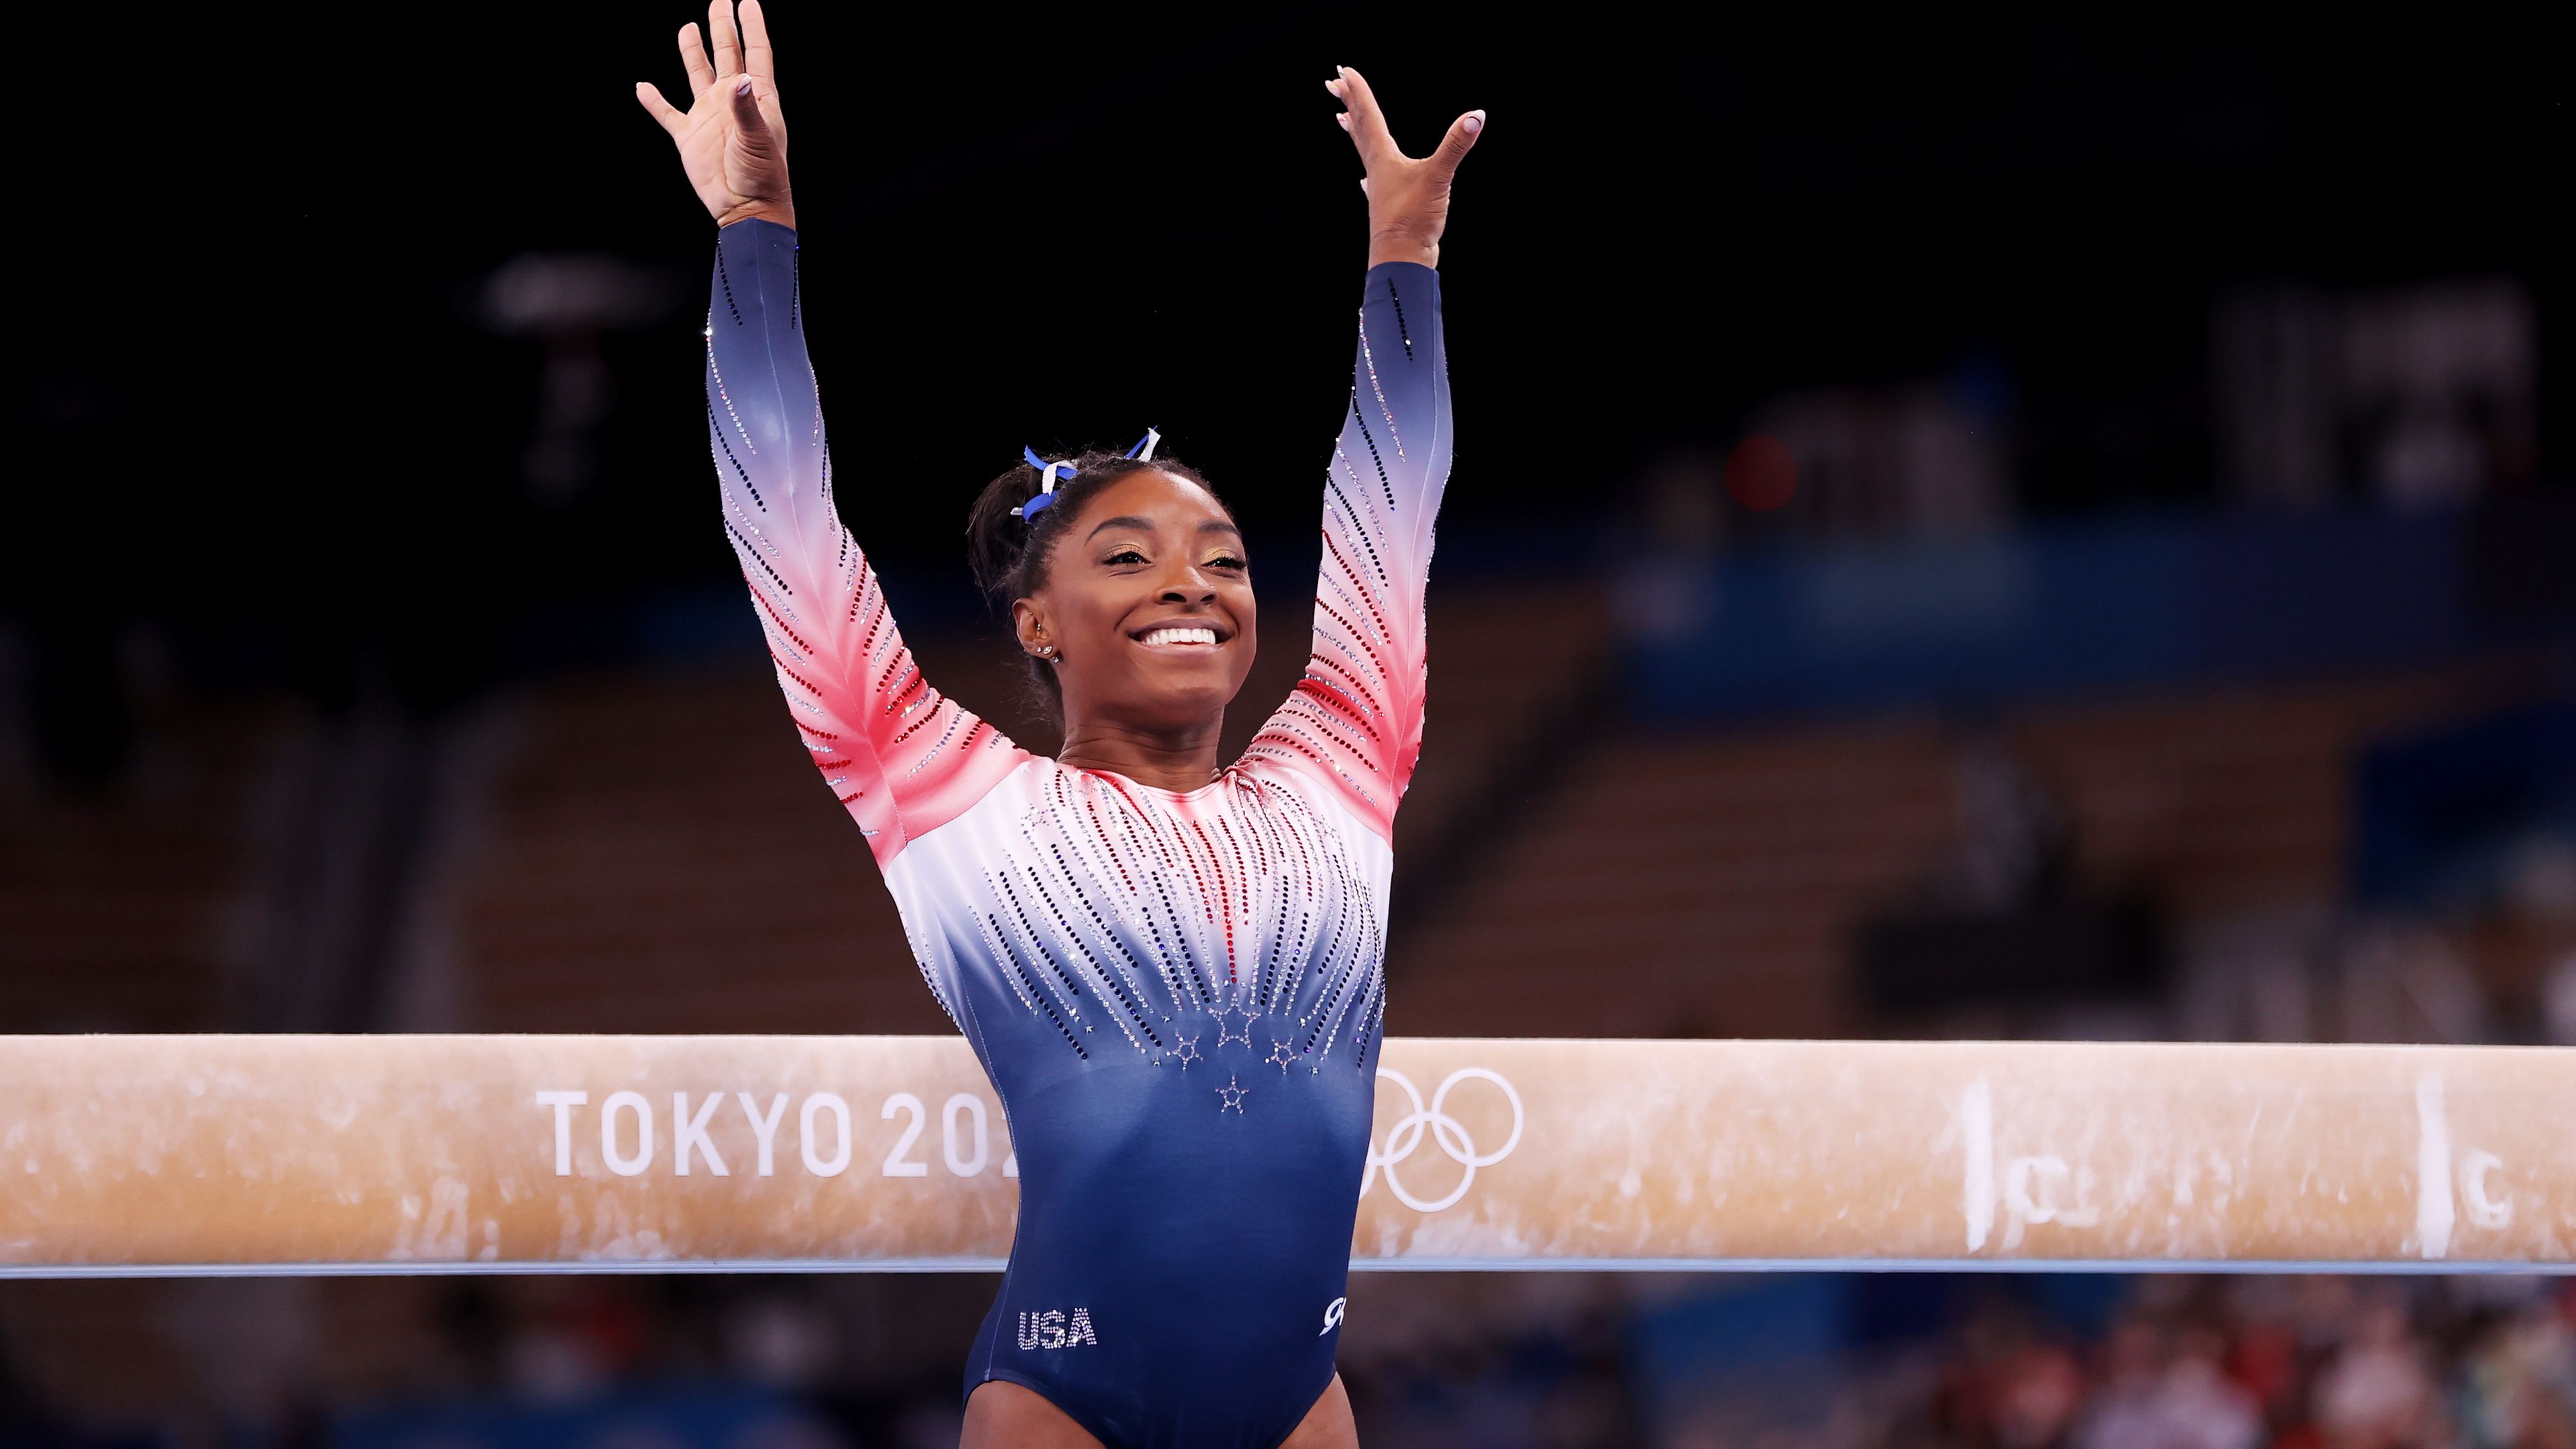 Tokyo 2021: Simone Biles wins bronze medal in brave Olympics comeback